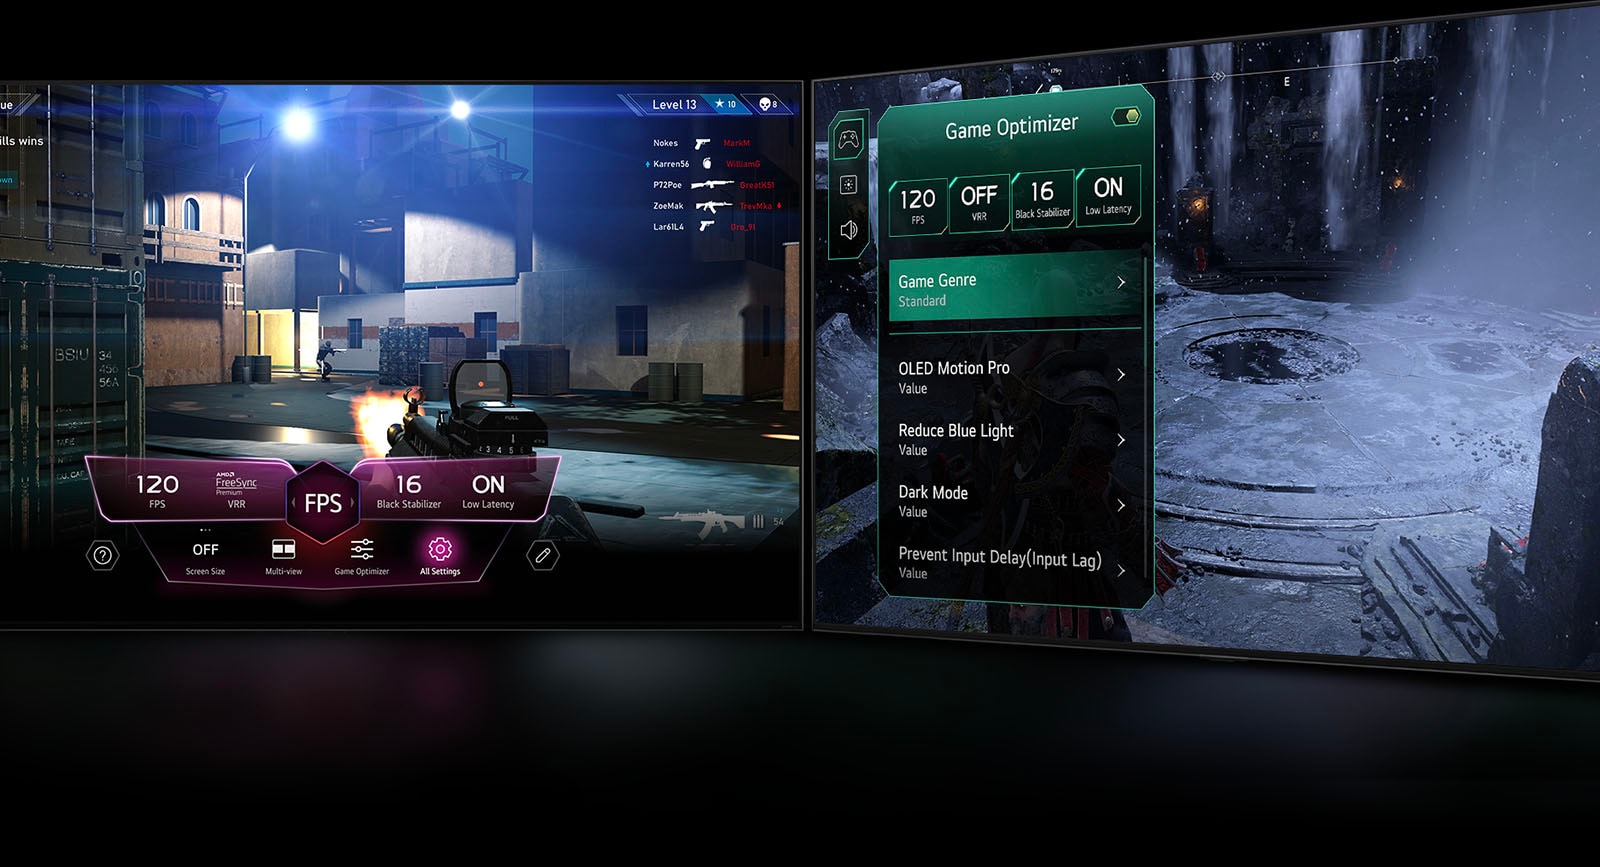 FPS-mängustseen koos mängu juhtpaneeliga, mis kuvatakse mängu ajal ekraanile. Pime talvine stseen koos mängu optimeerija menüüga. 